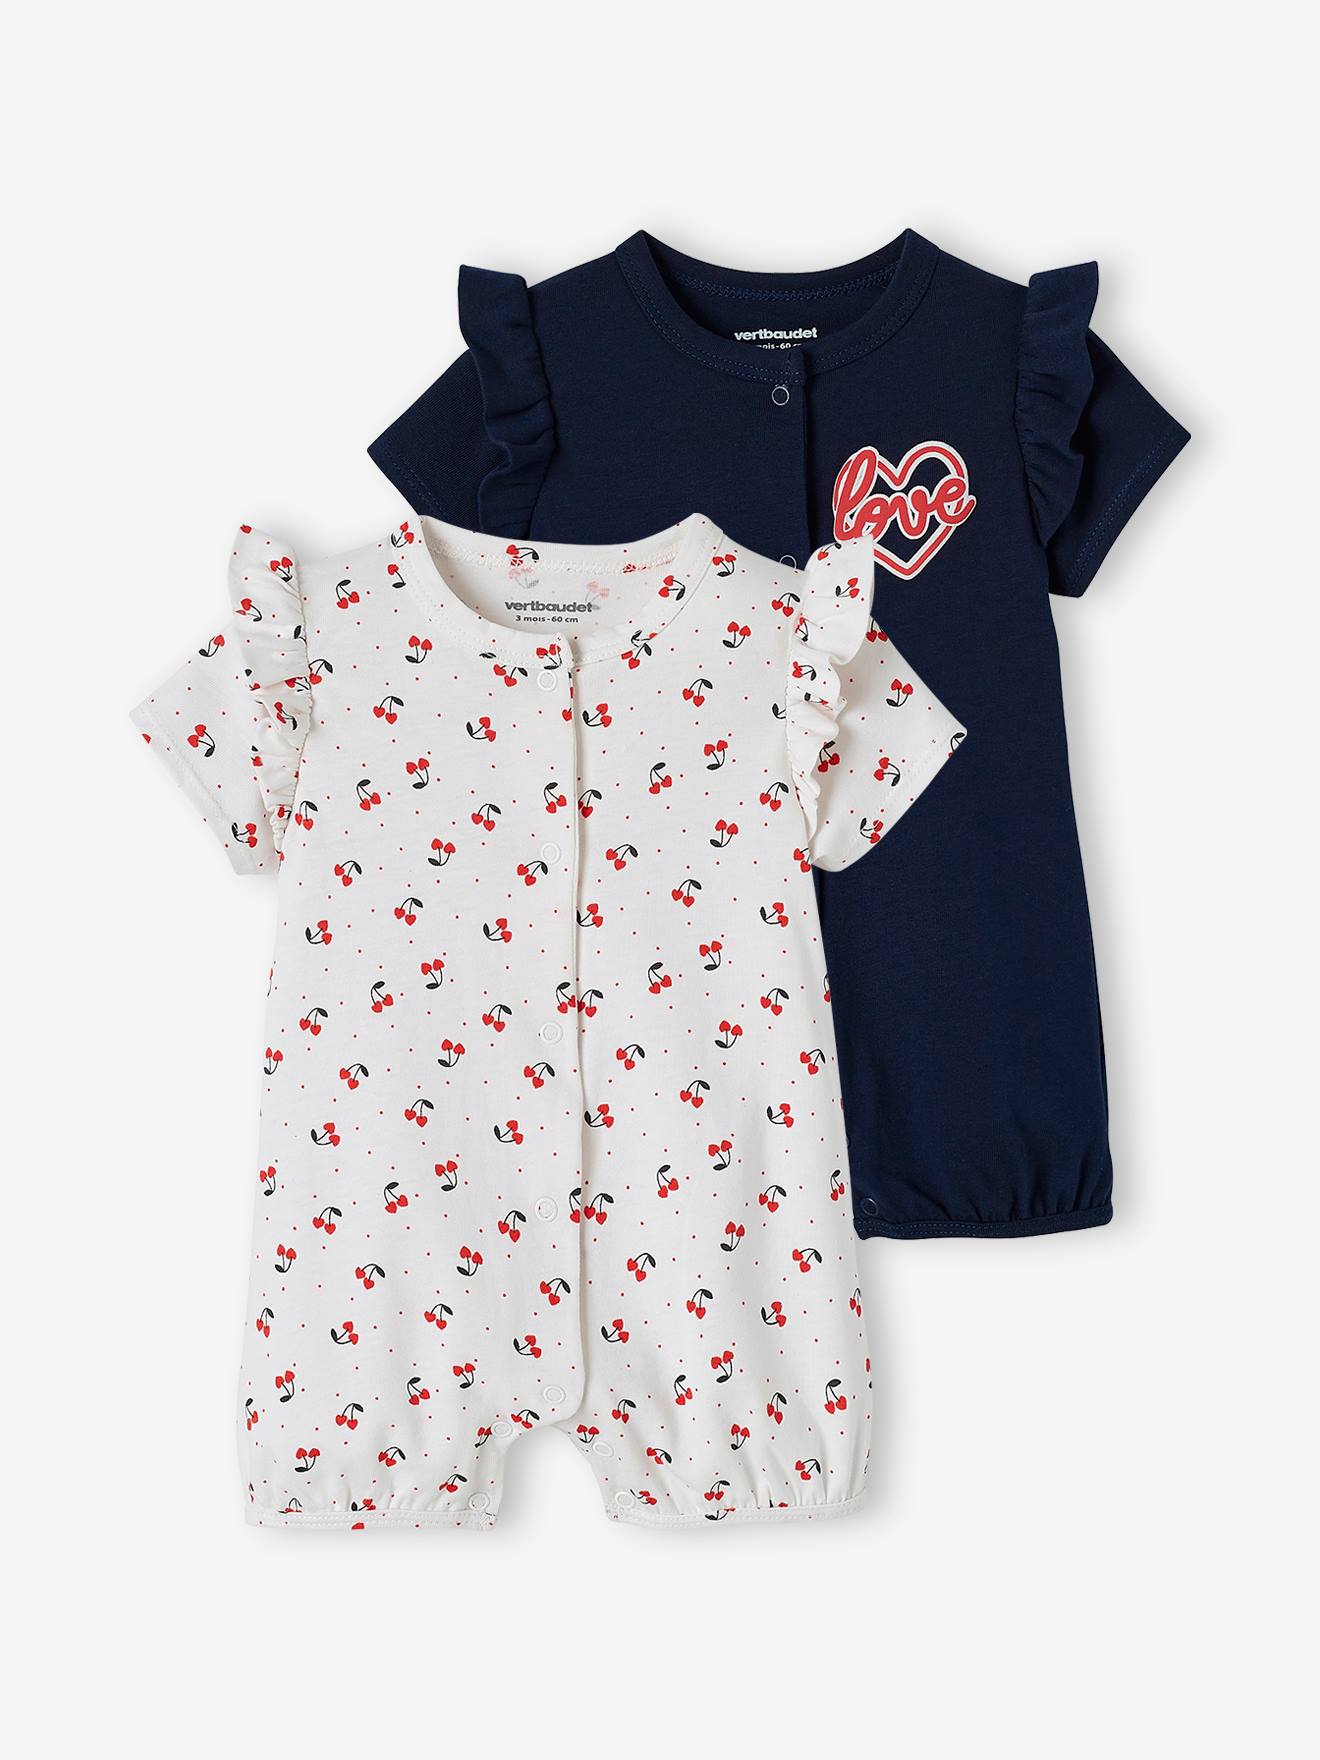 Set van 2 pyjama's playsuit voor babymeisjes set inkt